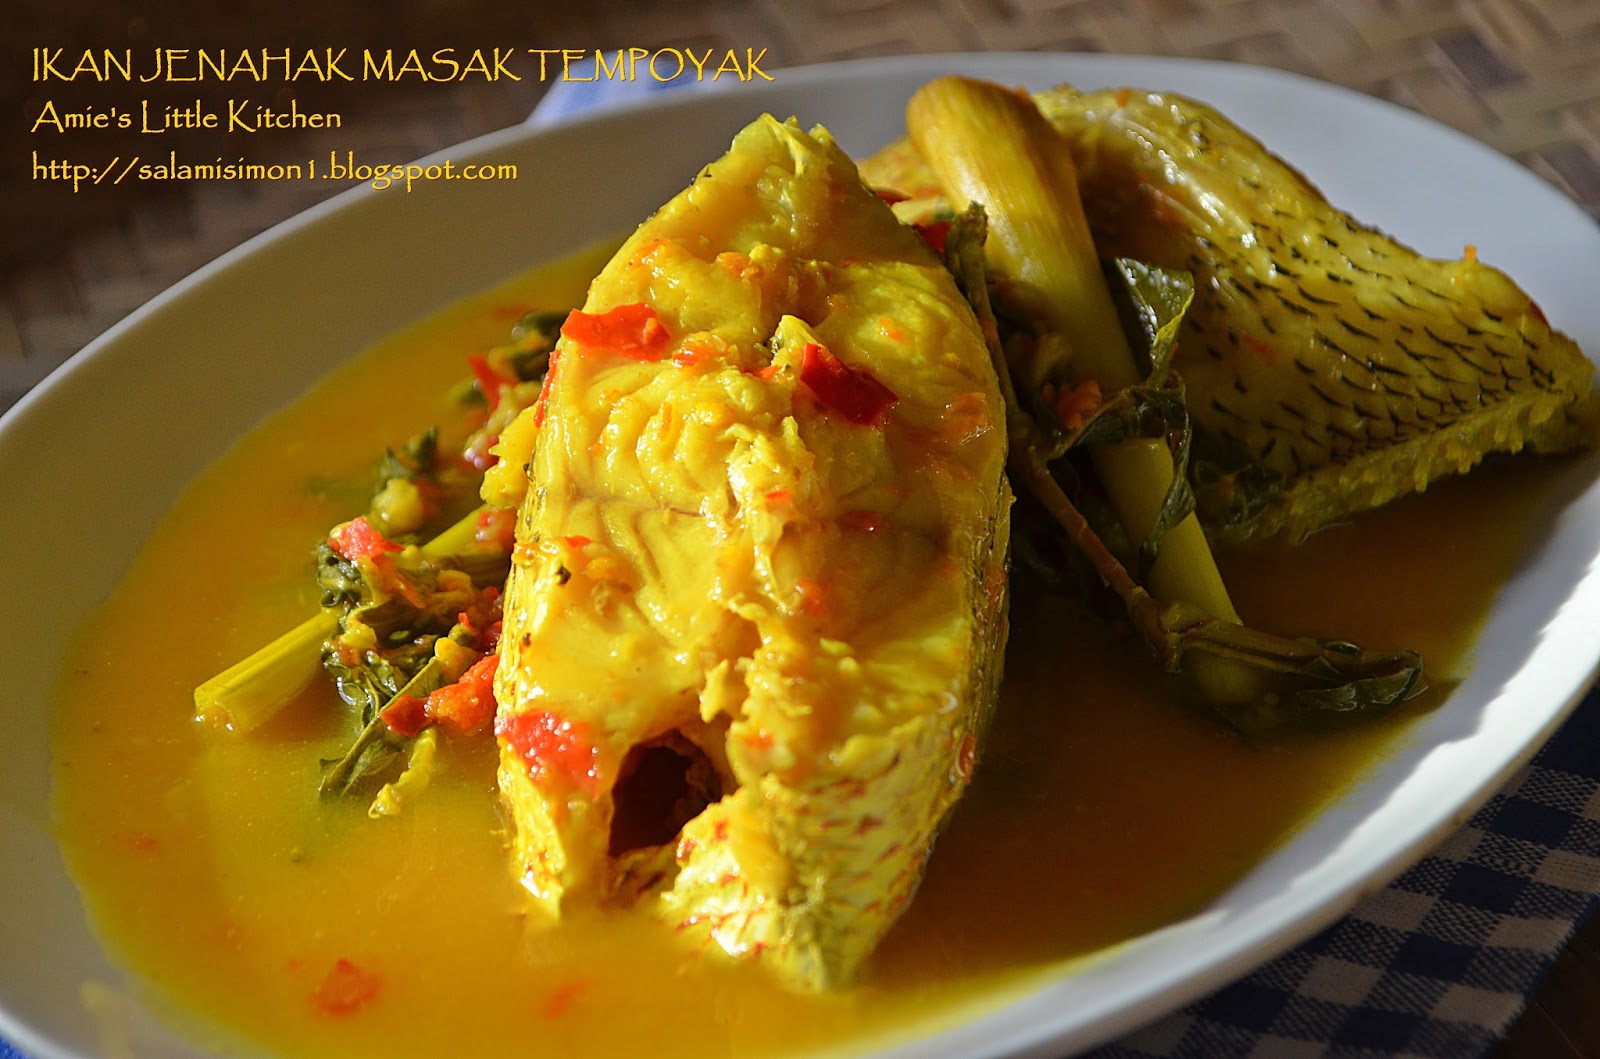 Ikan Jenahak Masak Tempoyak - Amie's Little Kitchen